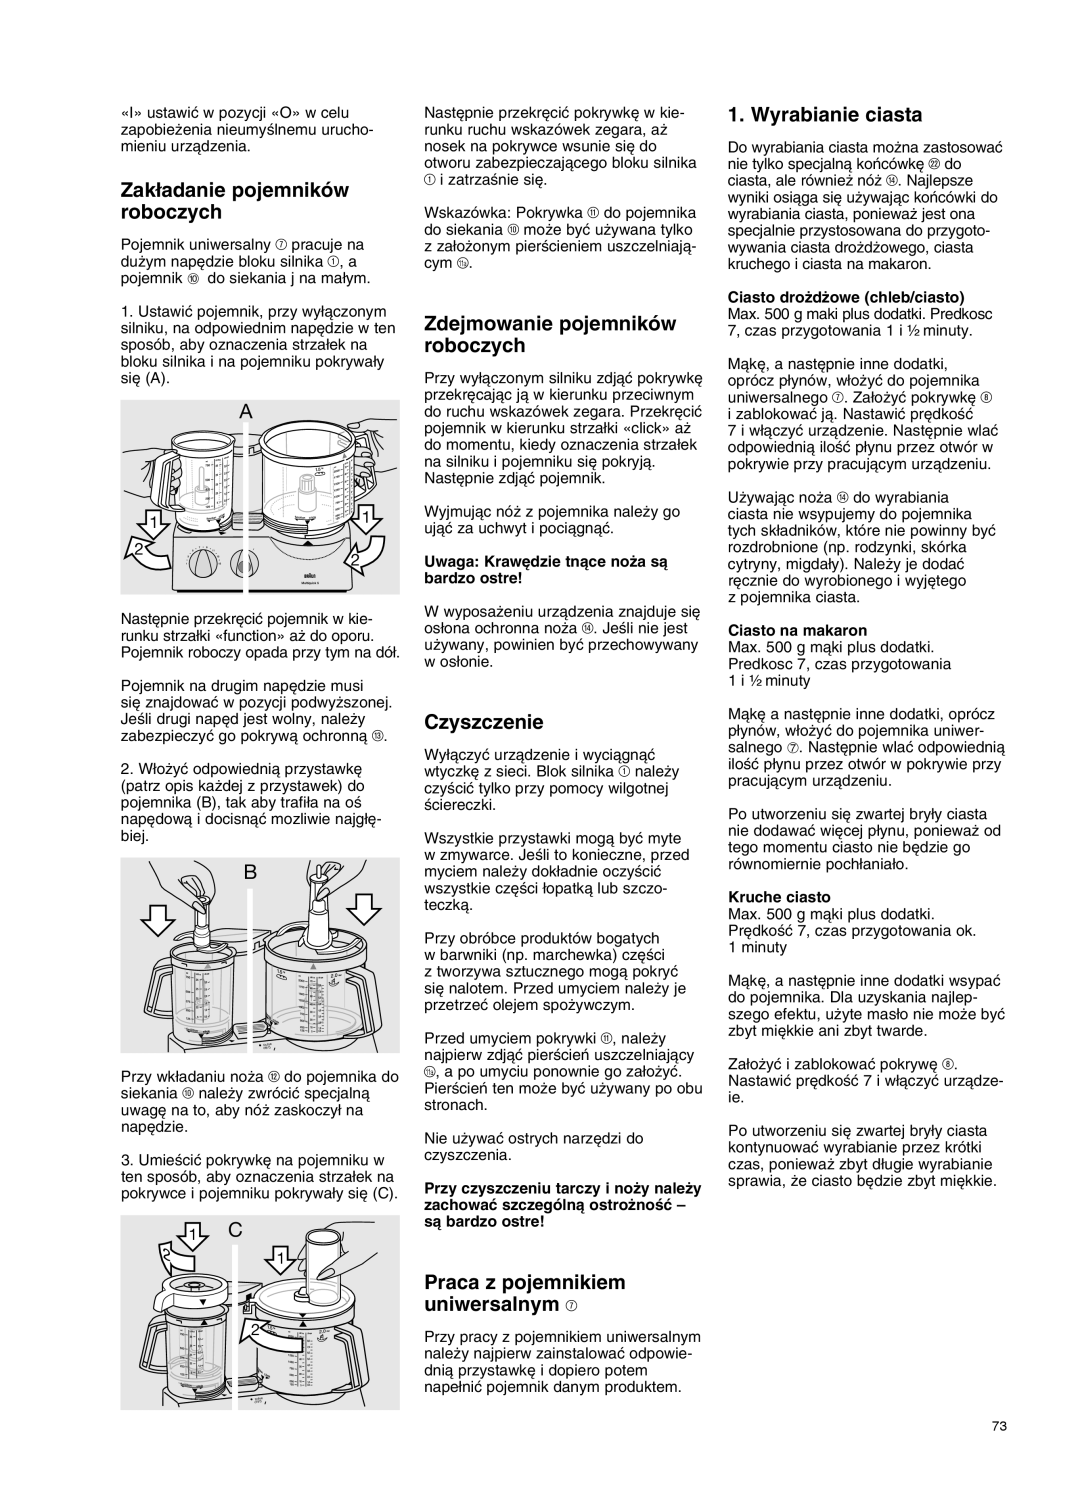 Braun K 700 manual Zak∏adanie pojemników roboczych, Zdejmowanie pojemników roboczych, Czyszczenie, Wyrabianie ciasta, 1 C 2 